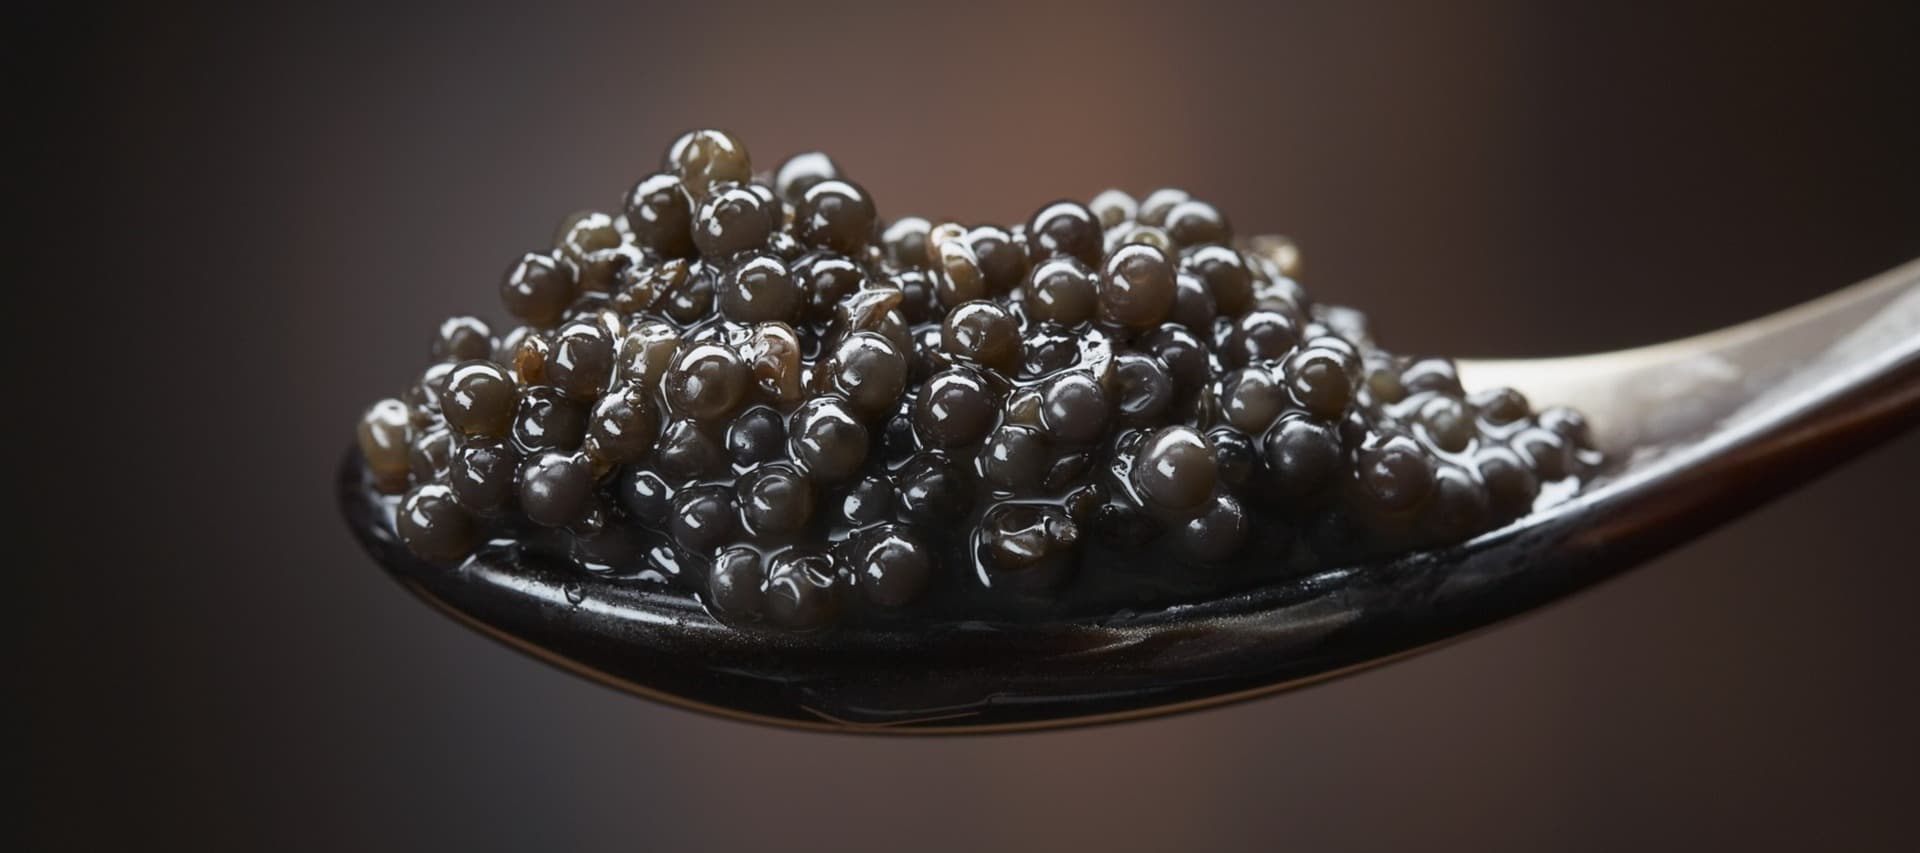 Фото новости: "«Русский икорный дом» будет выпускать косметические кремы Caviar"